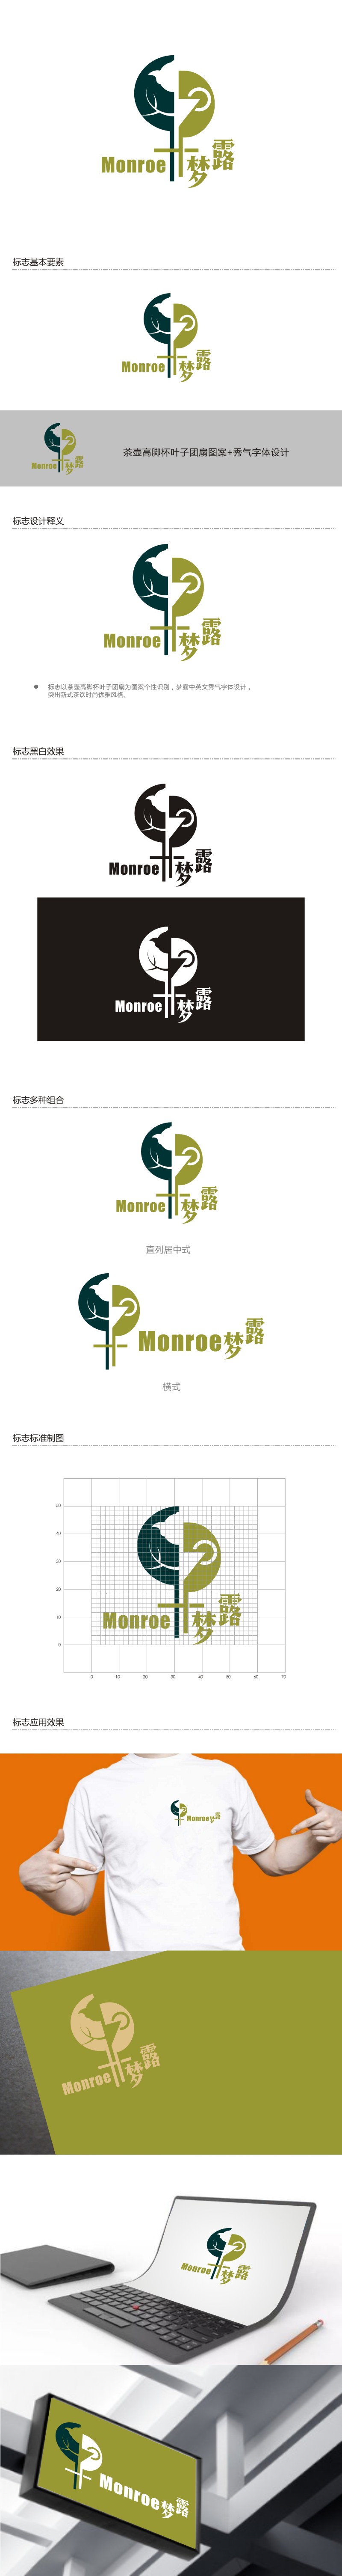 姜彦海的梦露logo设计